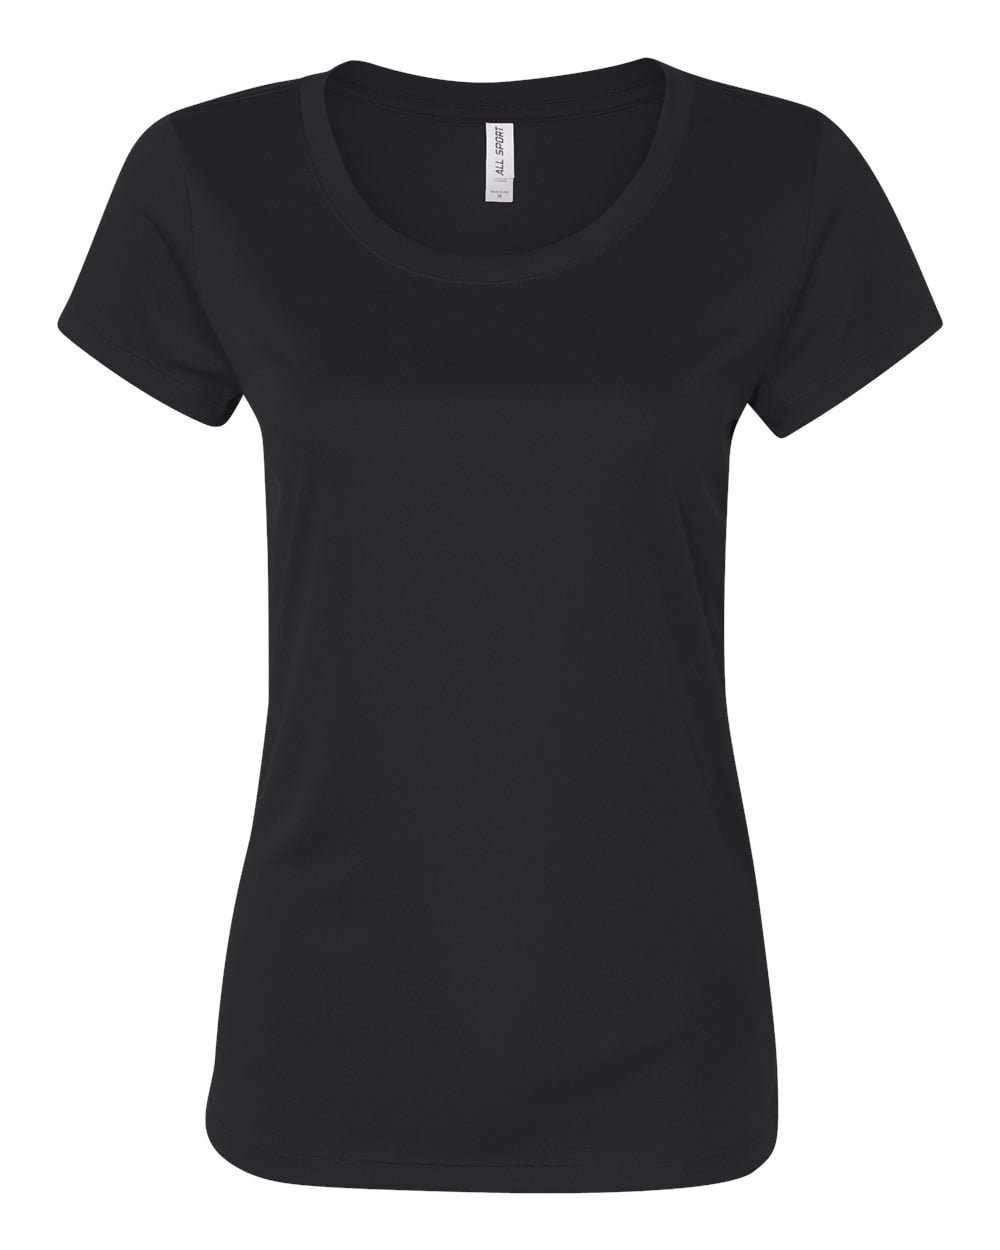 All Sport - Women's Polyester T-Shirt - Walmart.com